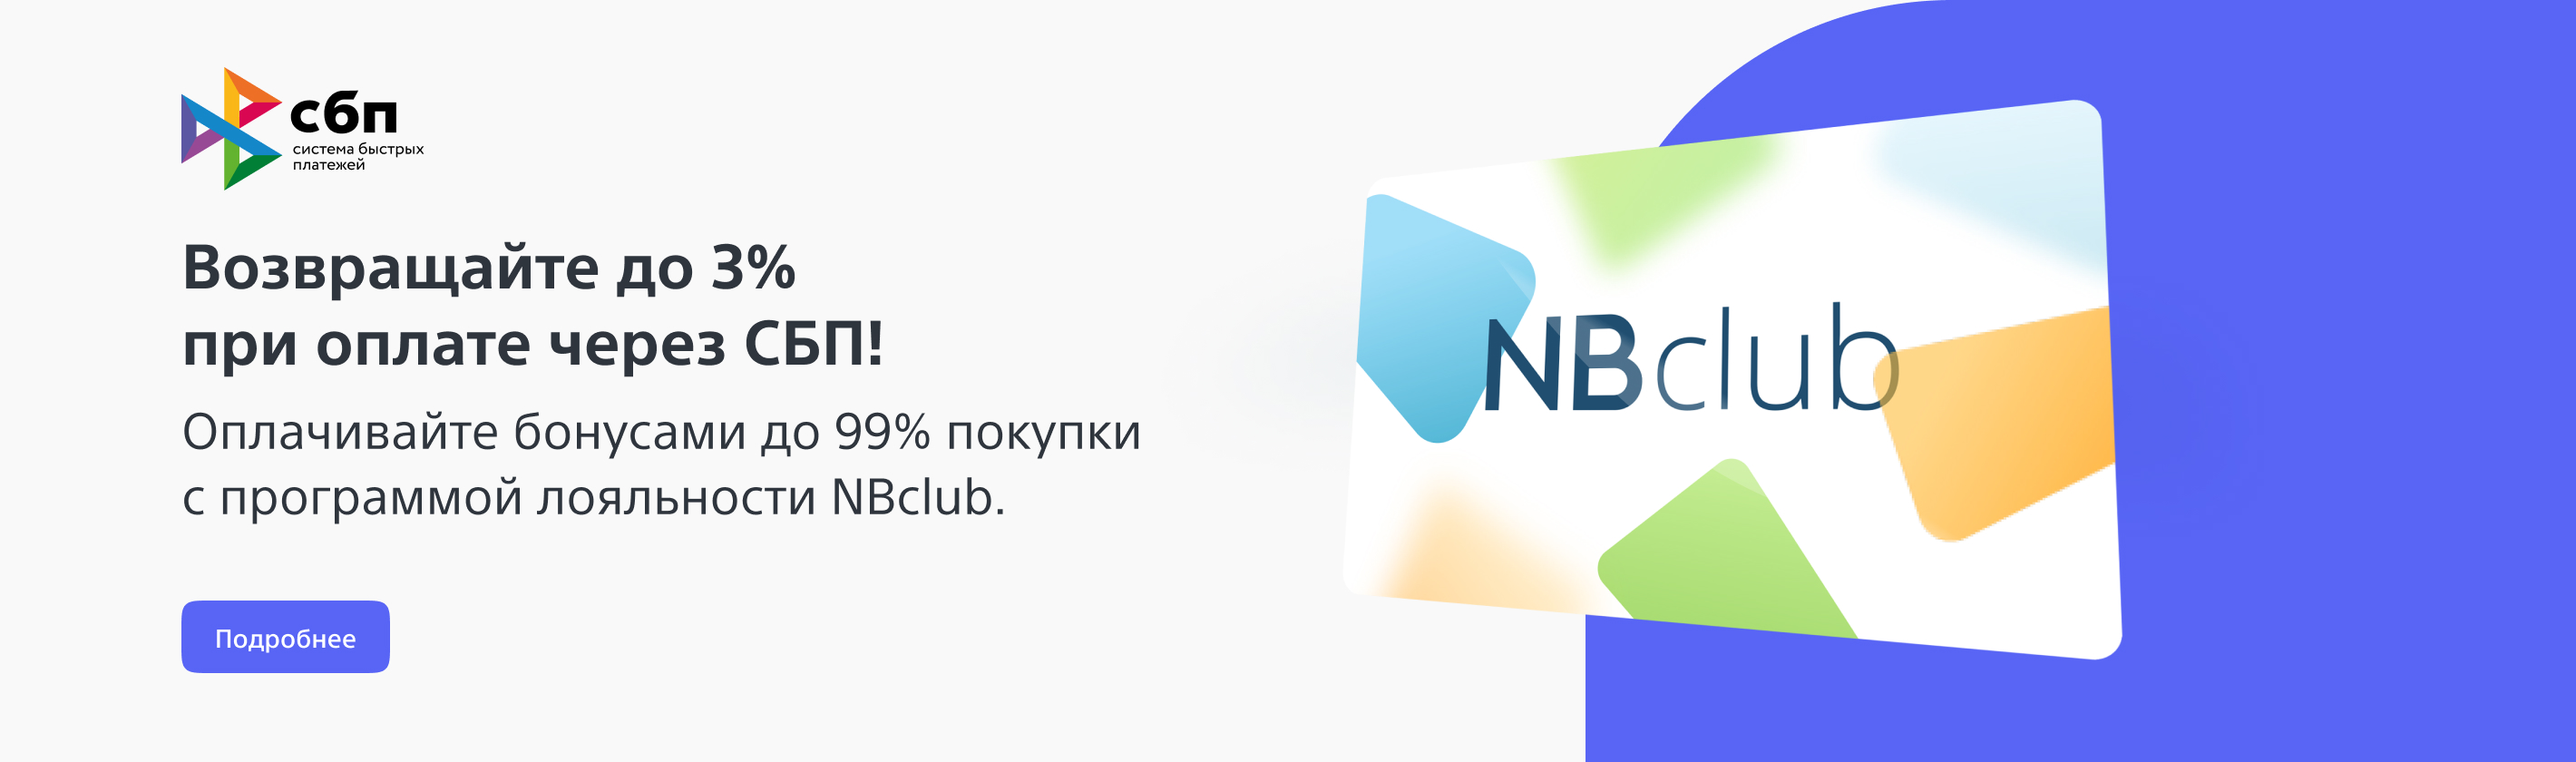 NBclub